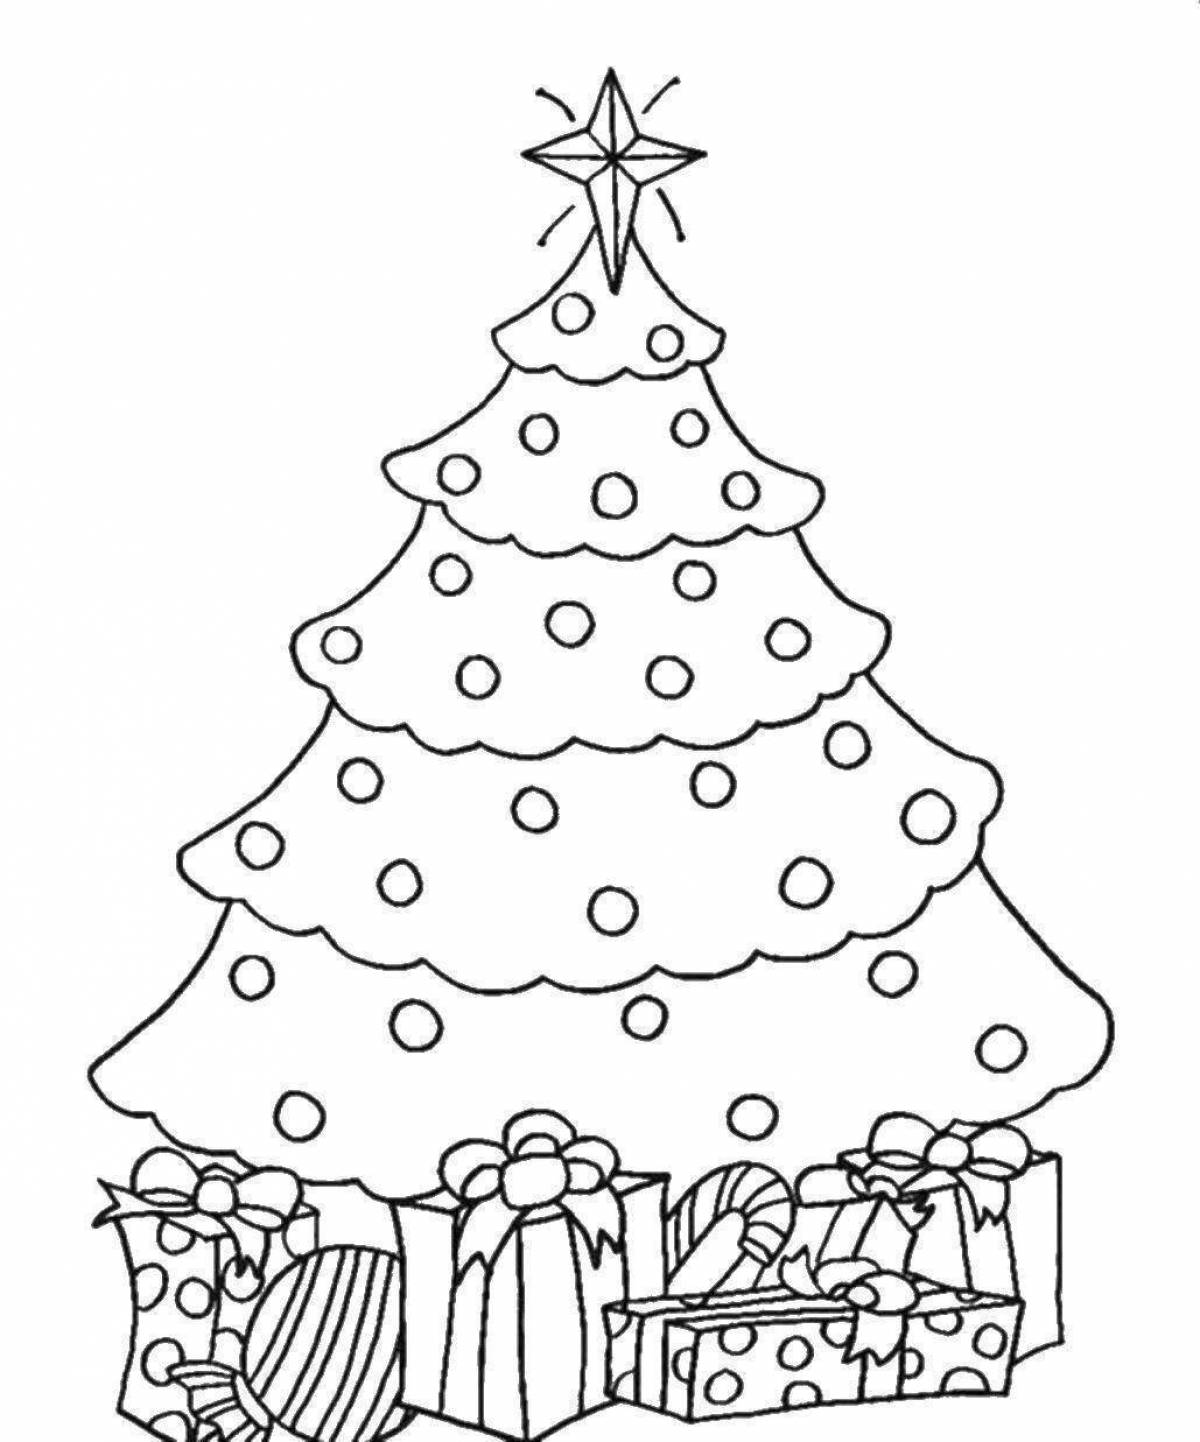 Coloring big Christmas tree